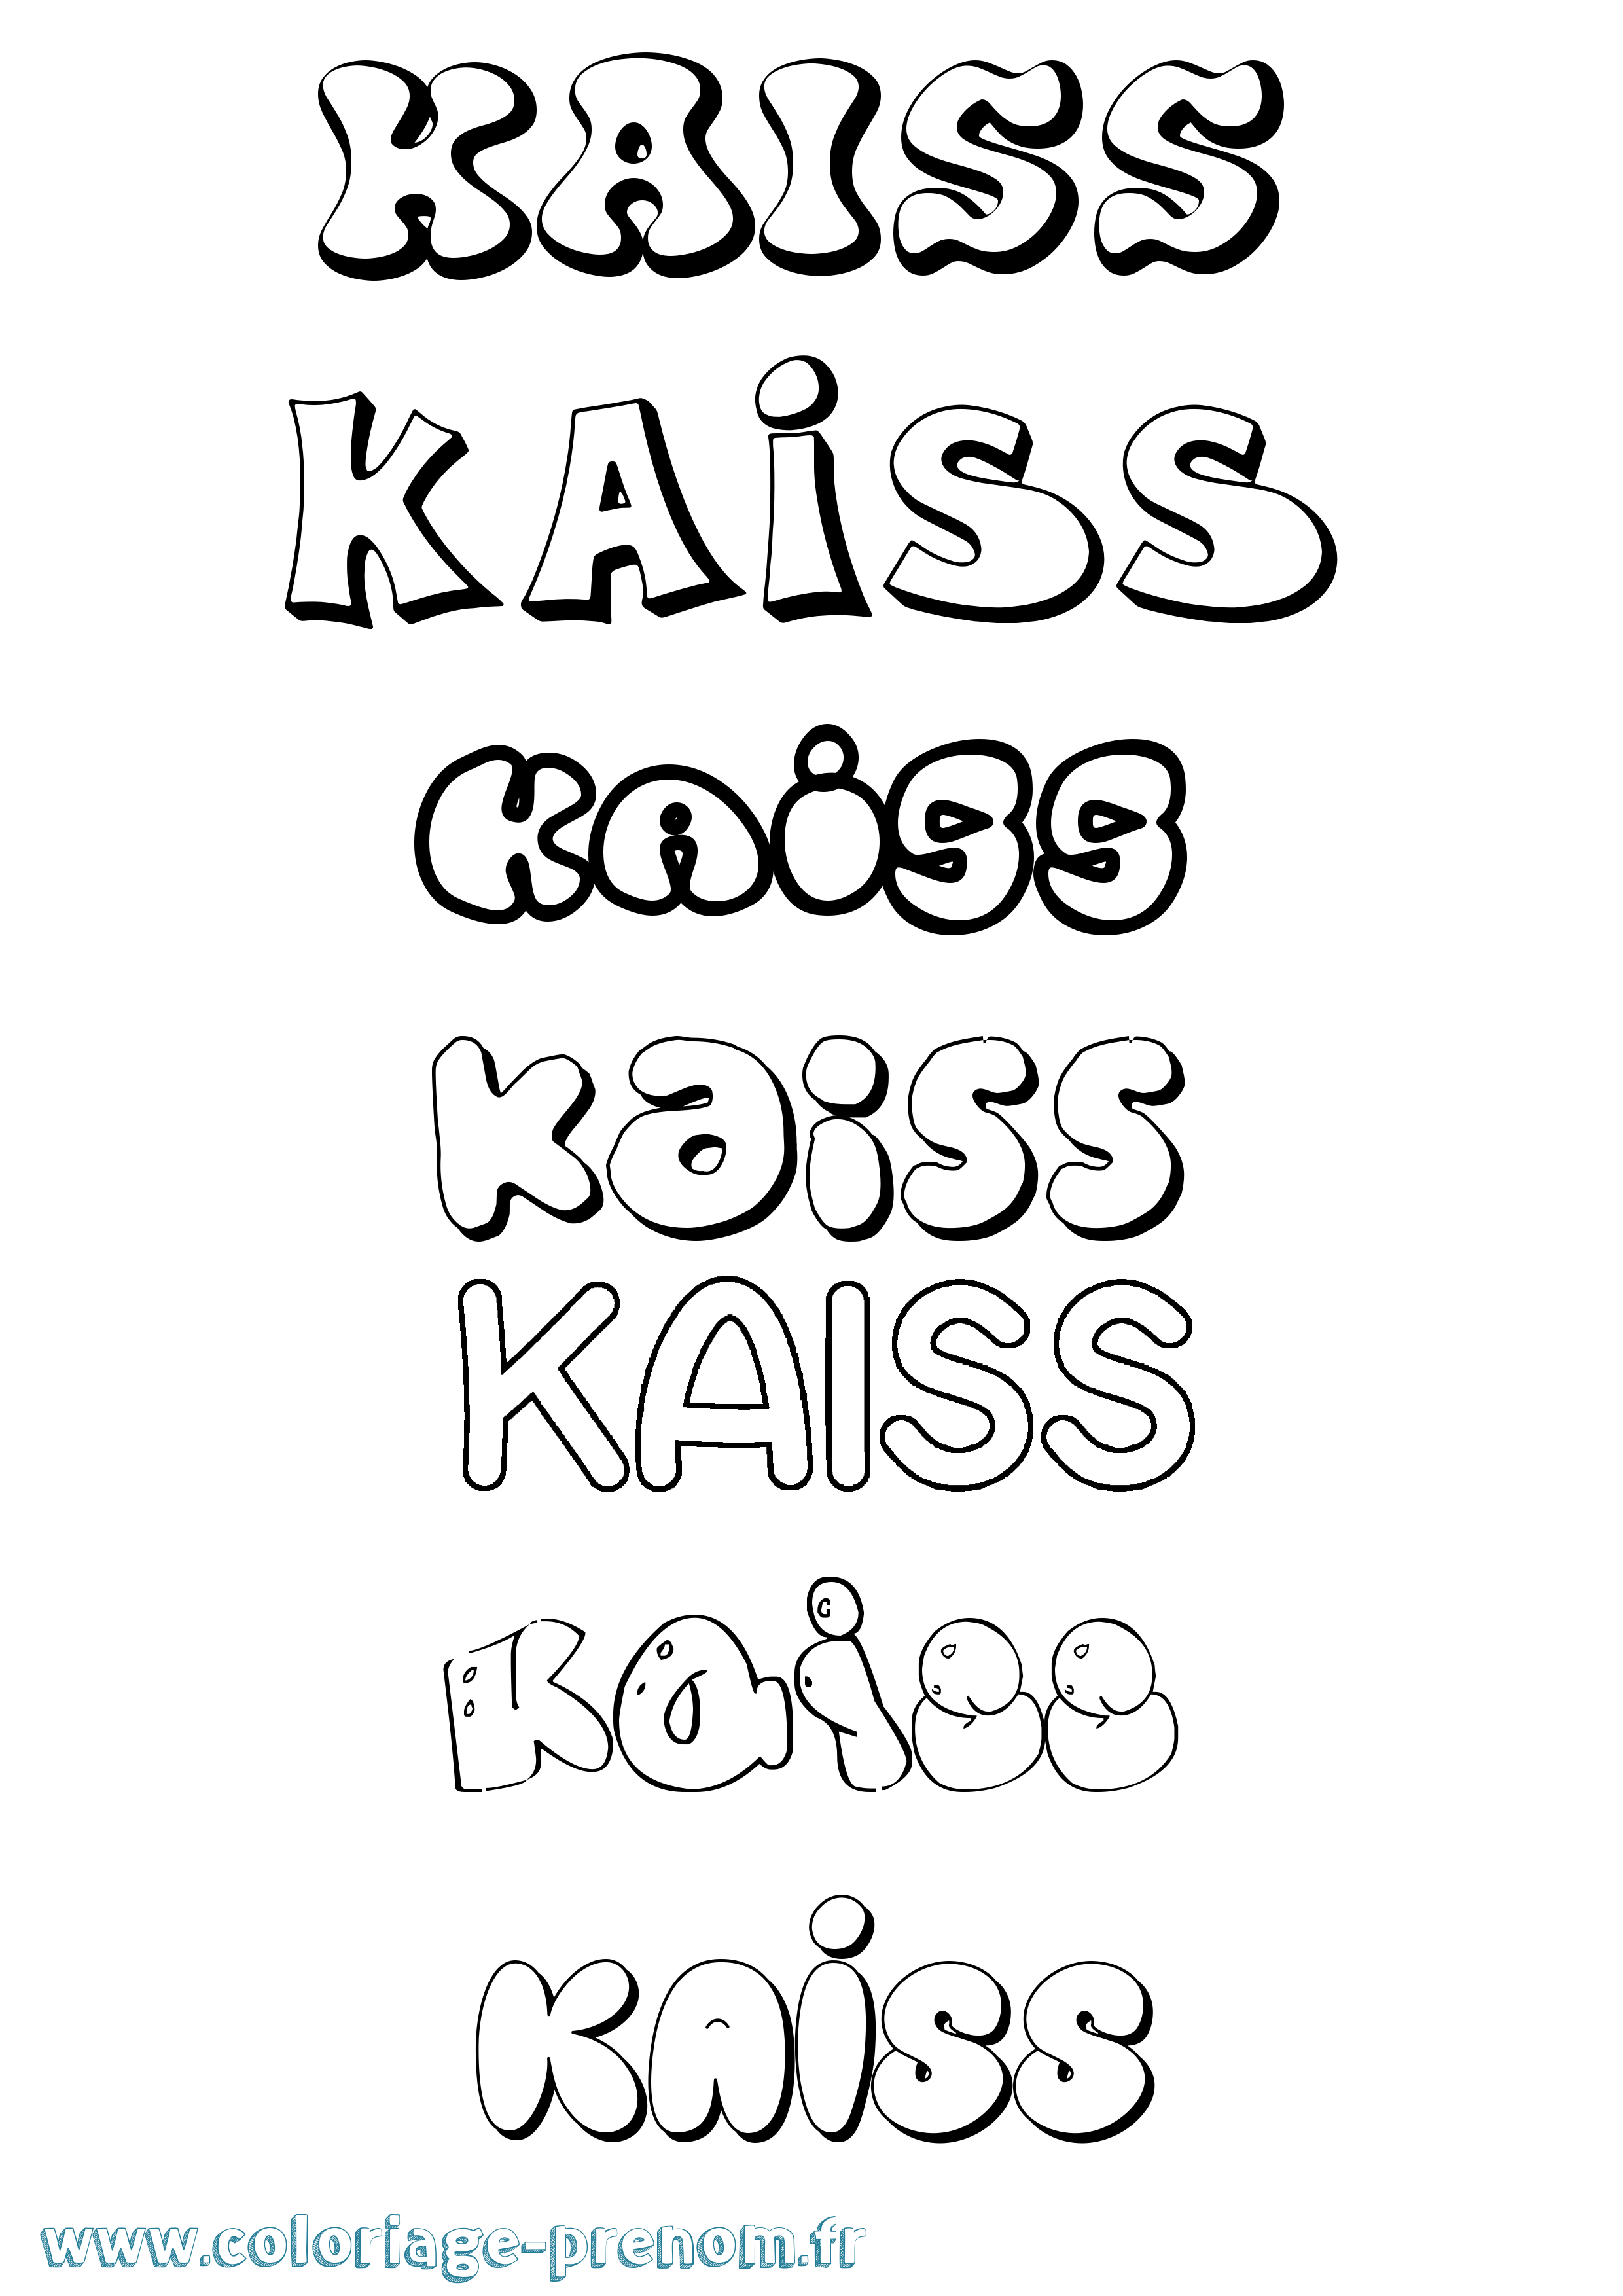 Coloriage prénom Kaiss Bubble